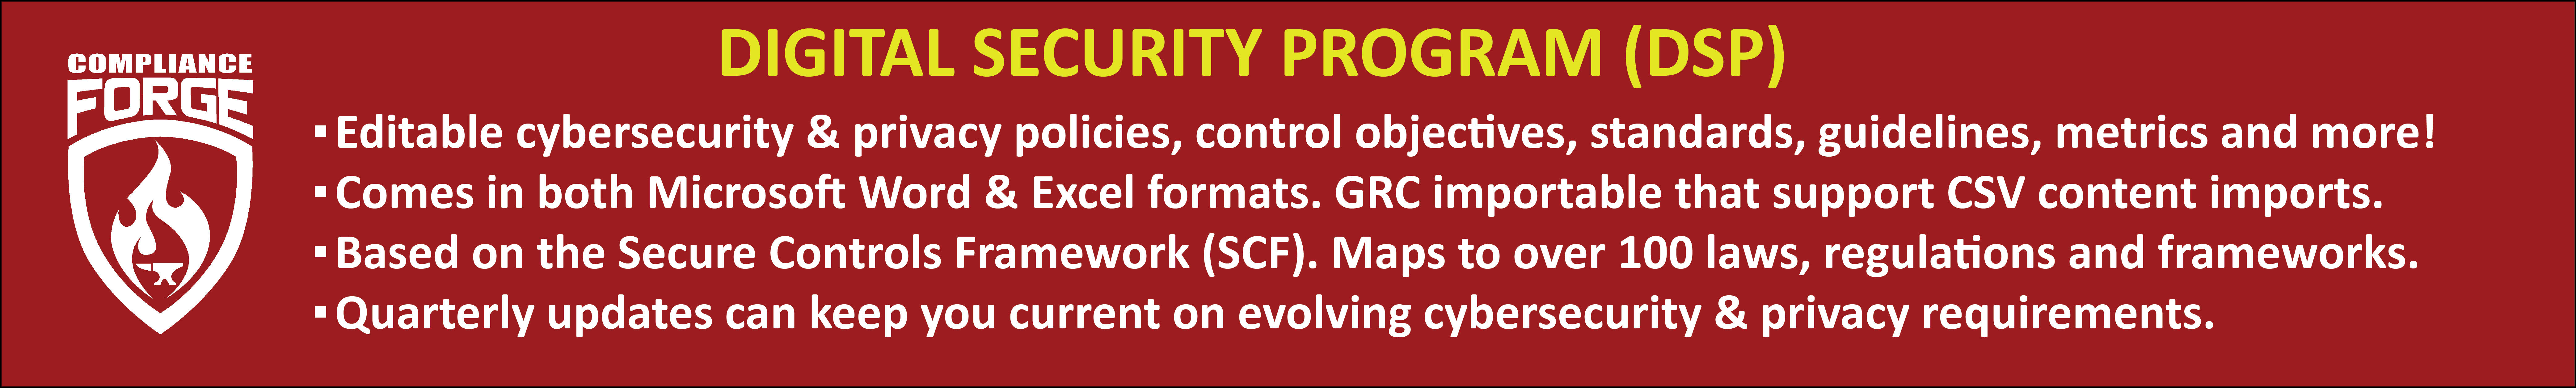 Digital Security Program - SCF based policies standards metrics